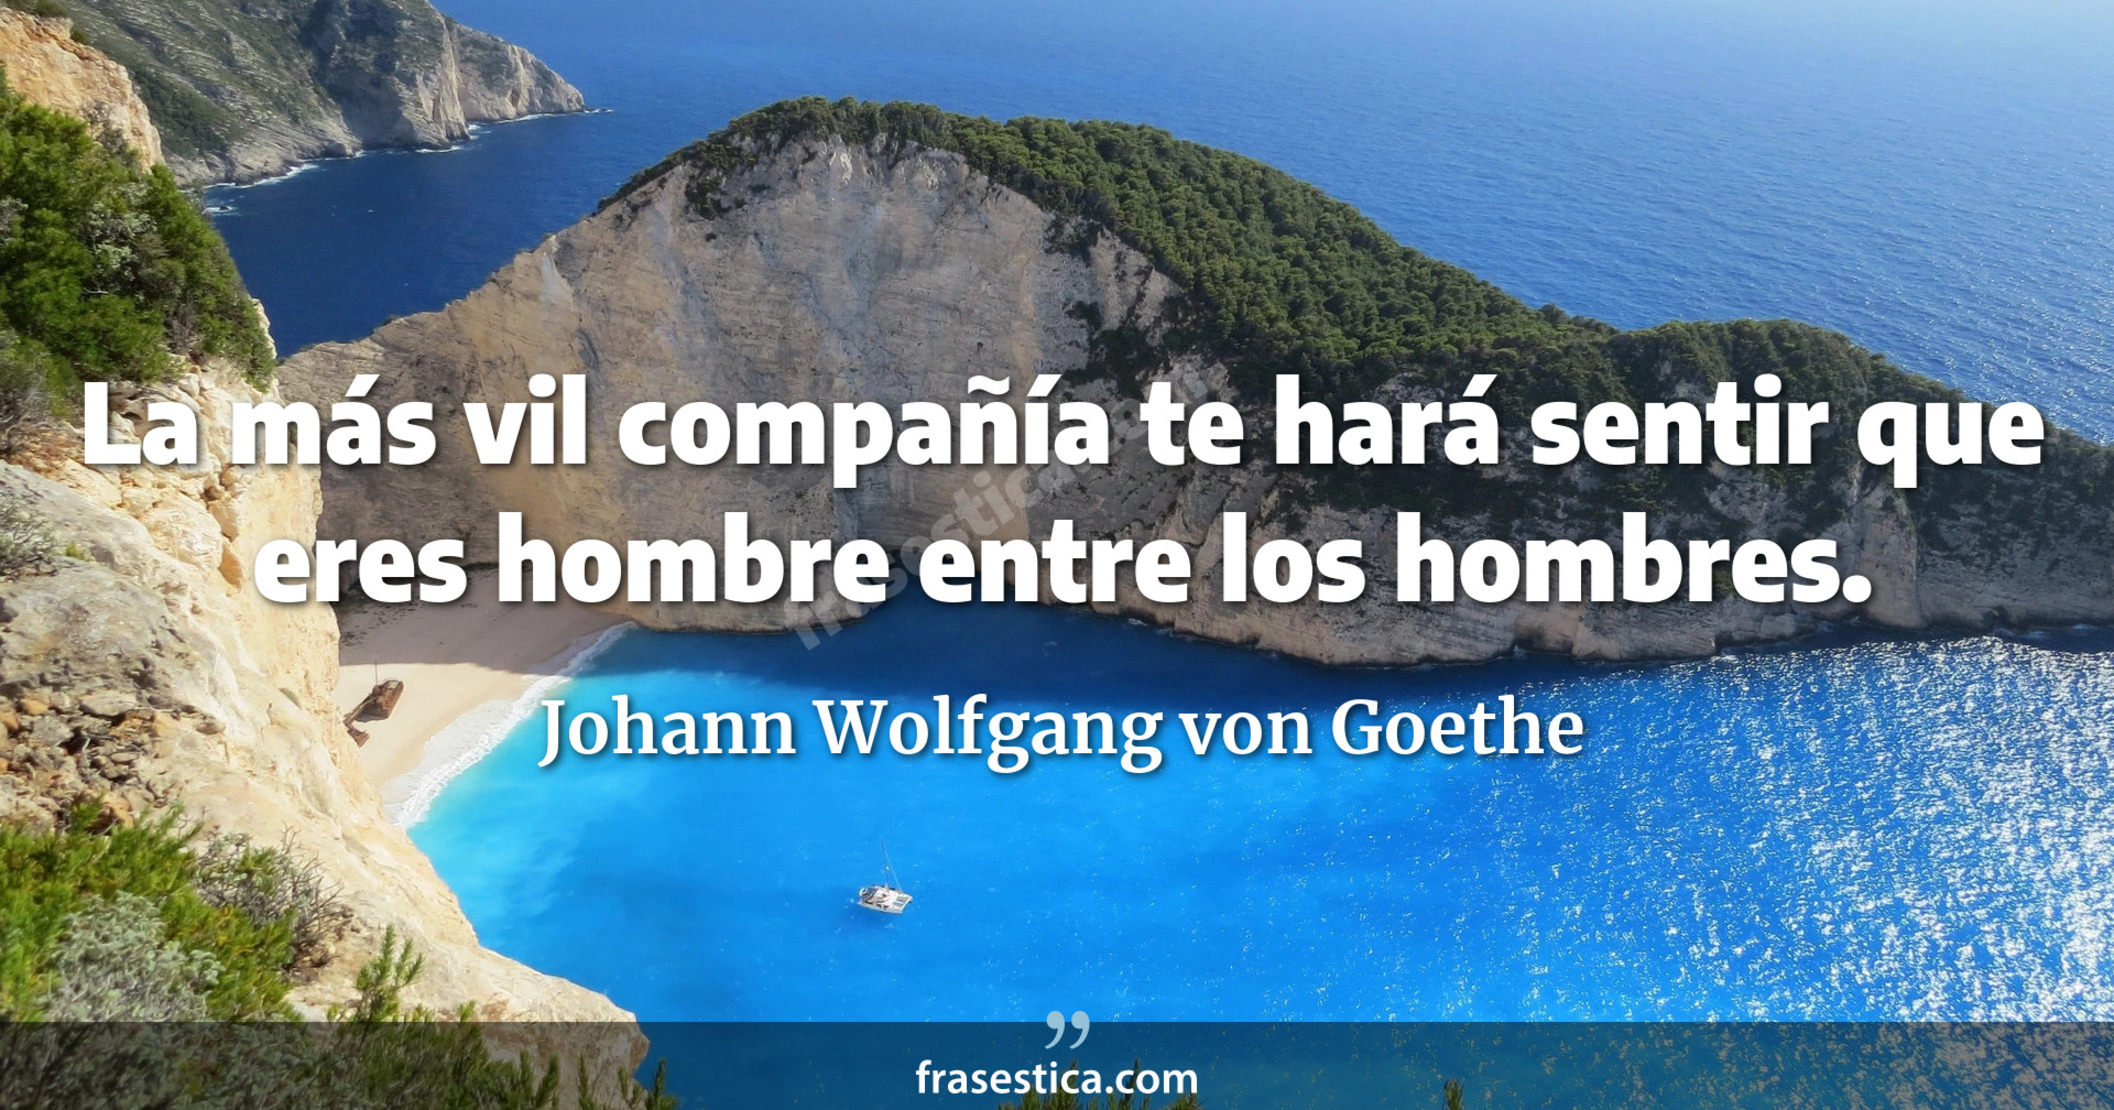 La más vil compañía te hará sentir que eres hombre entre los hombres. - Johann Wolfgang von Goethe